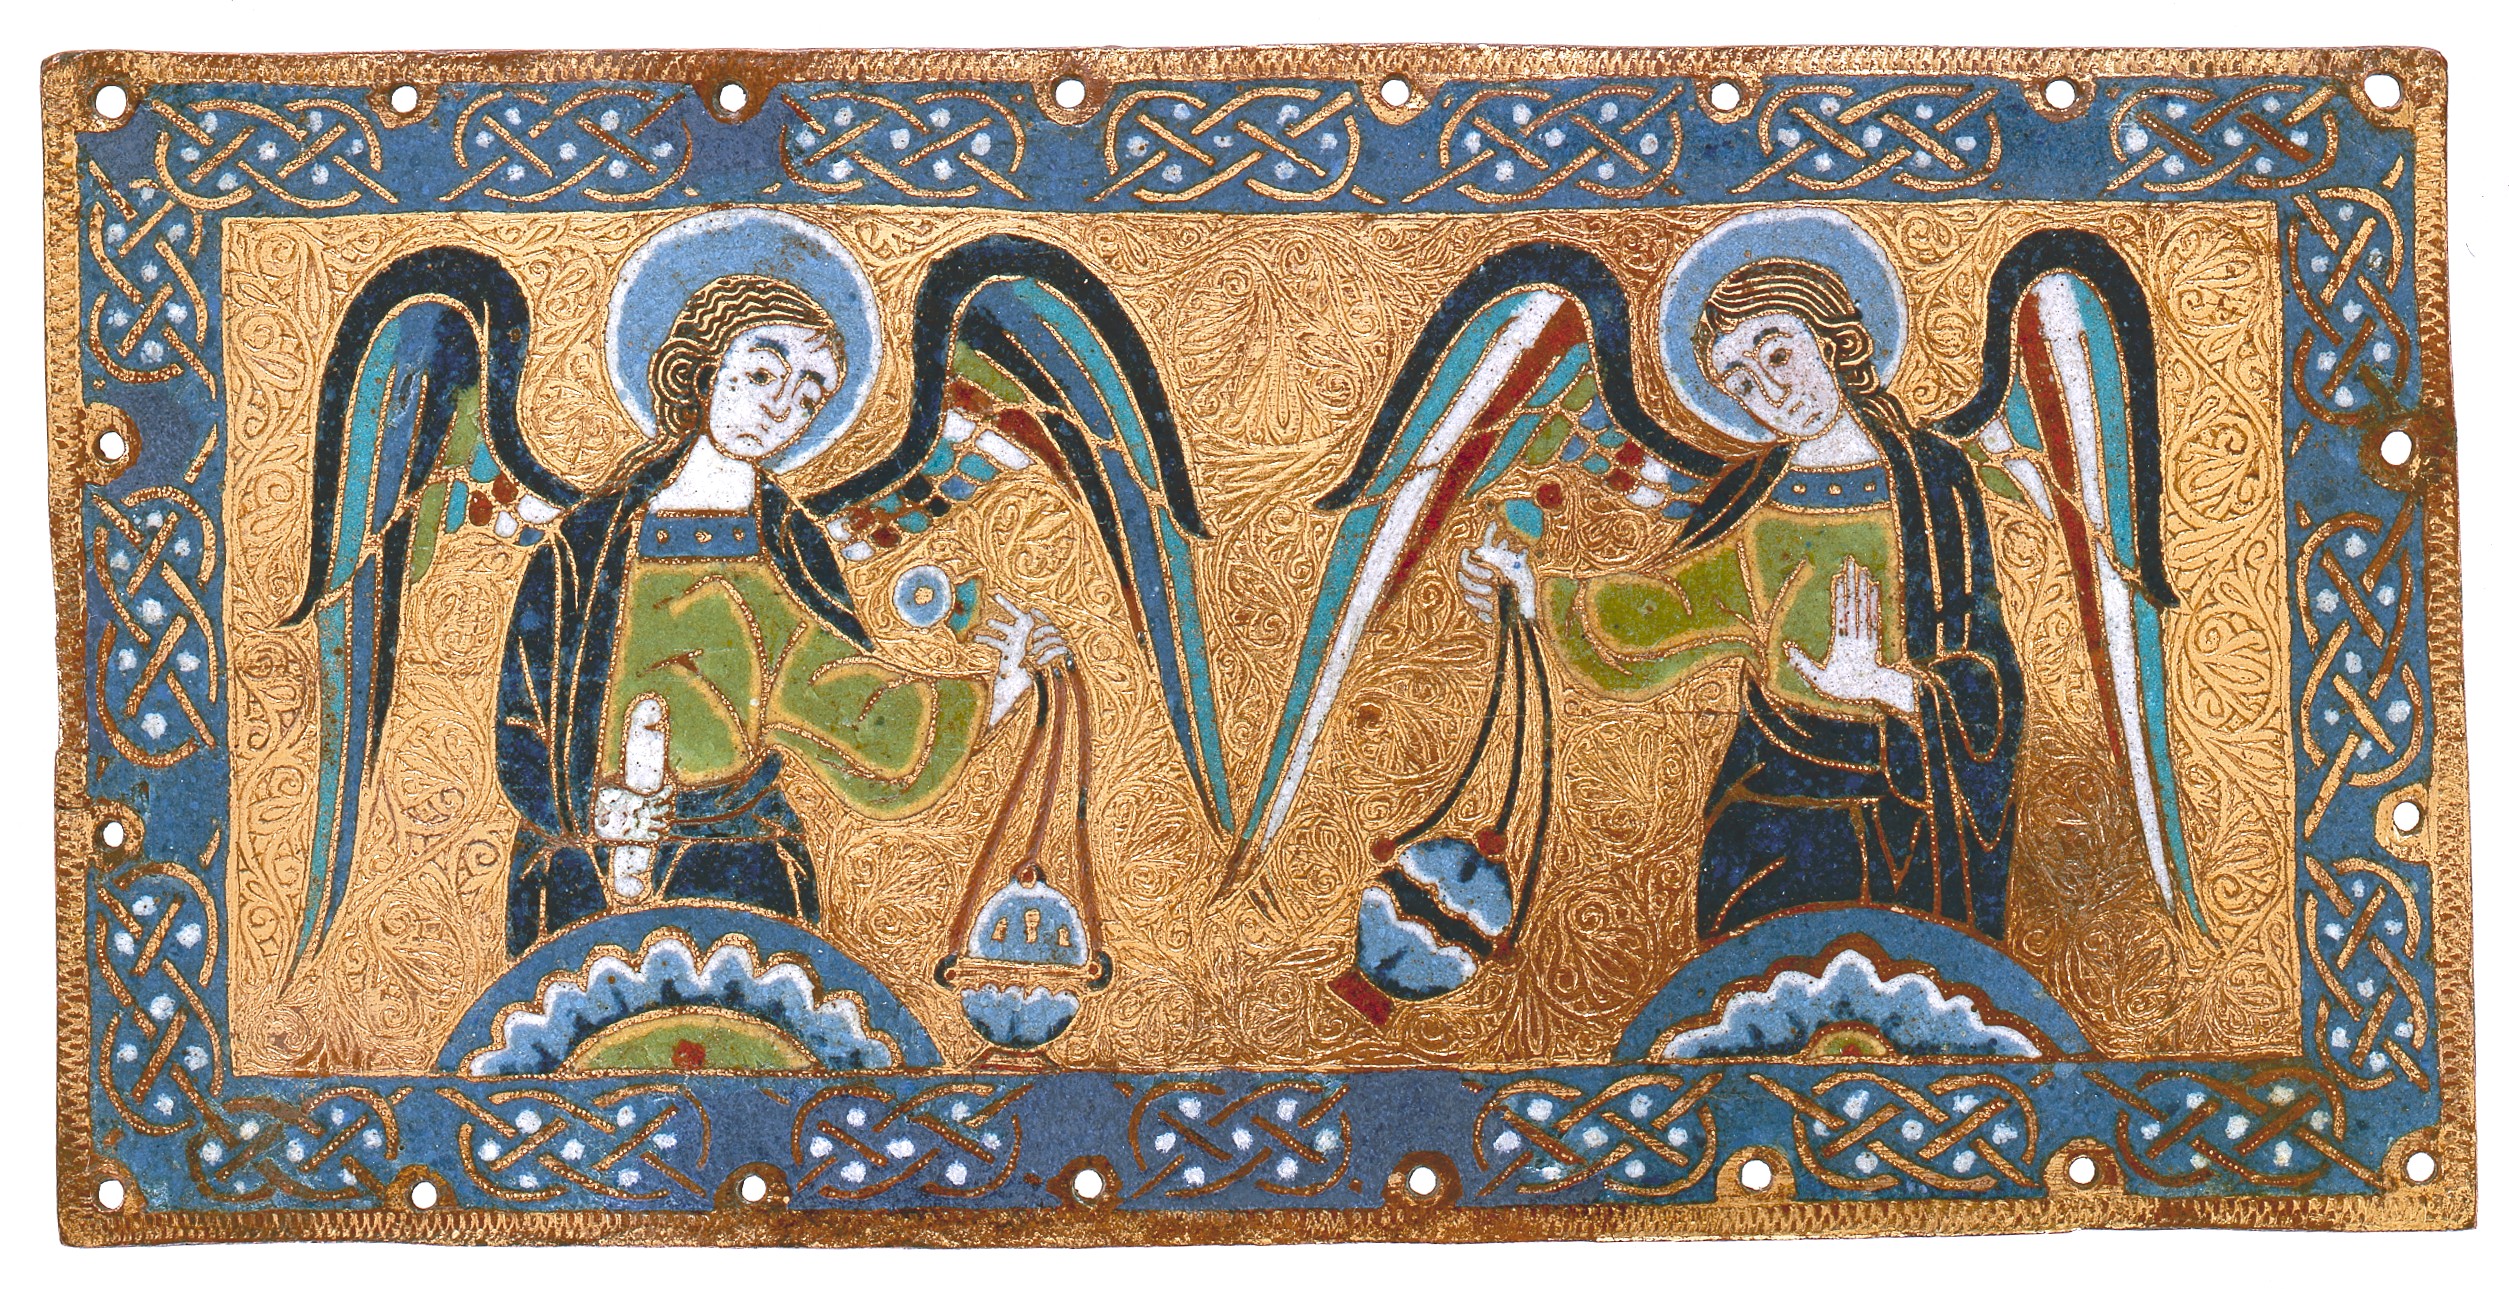 Plaquette met wierook brandende engelen by Onbekende Artiest - ca 1170-1180 - 11 x 22,1 x 0,3 cm 